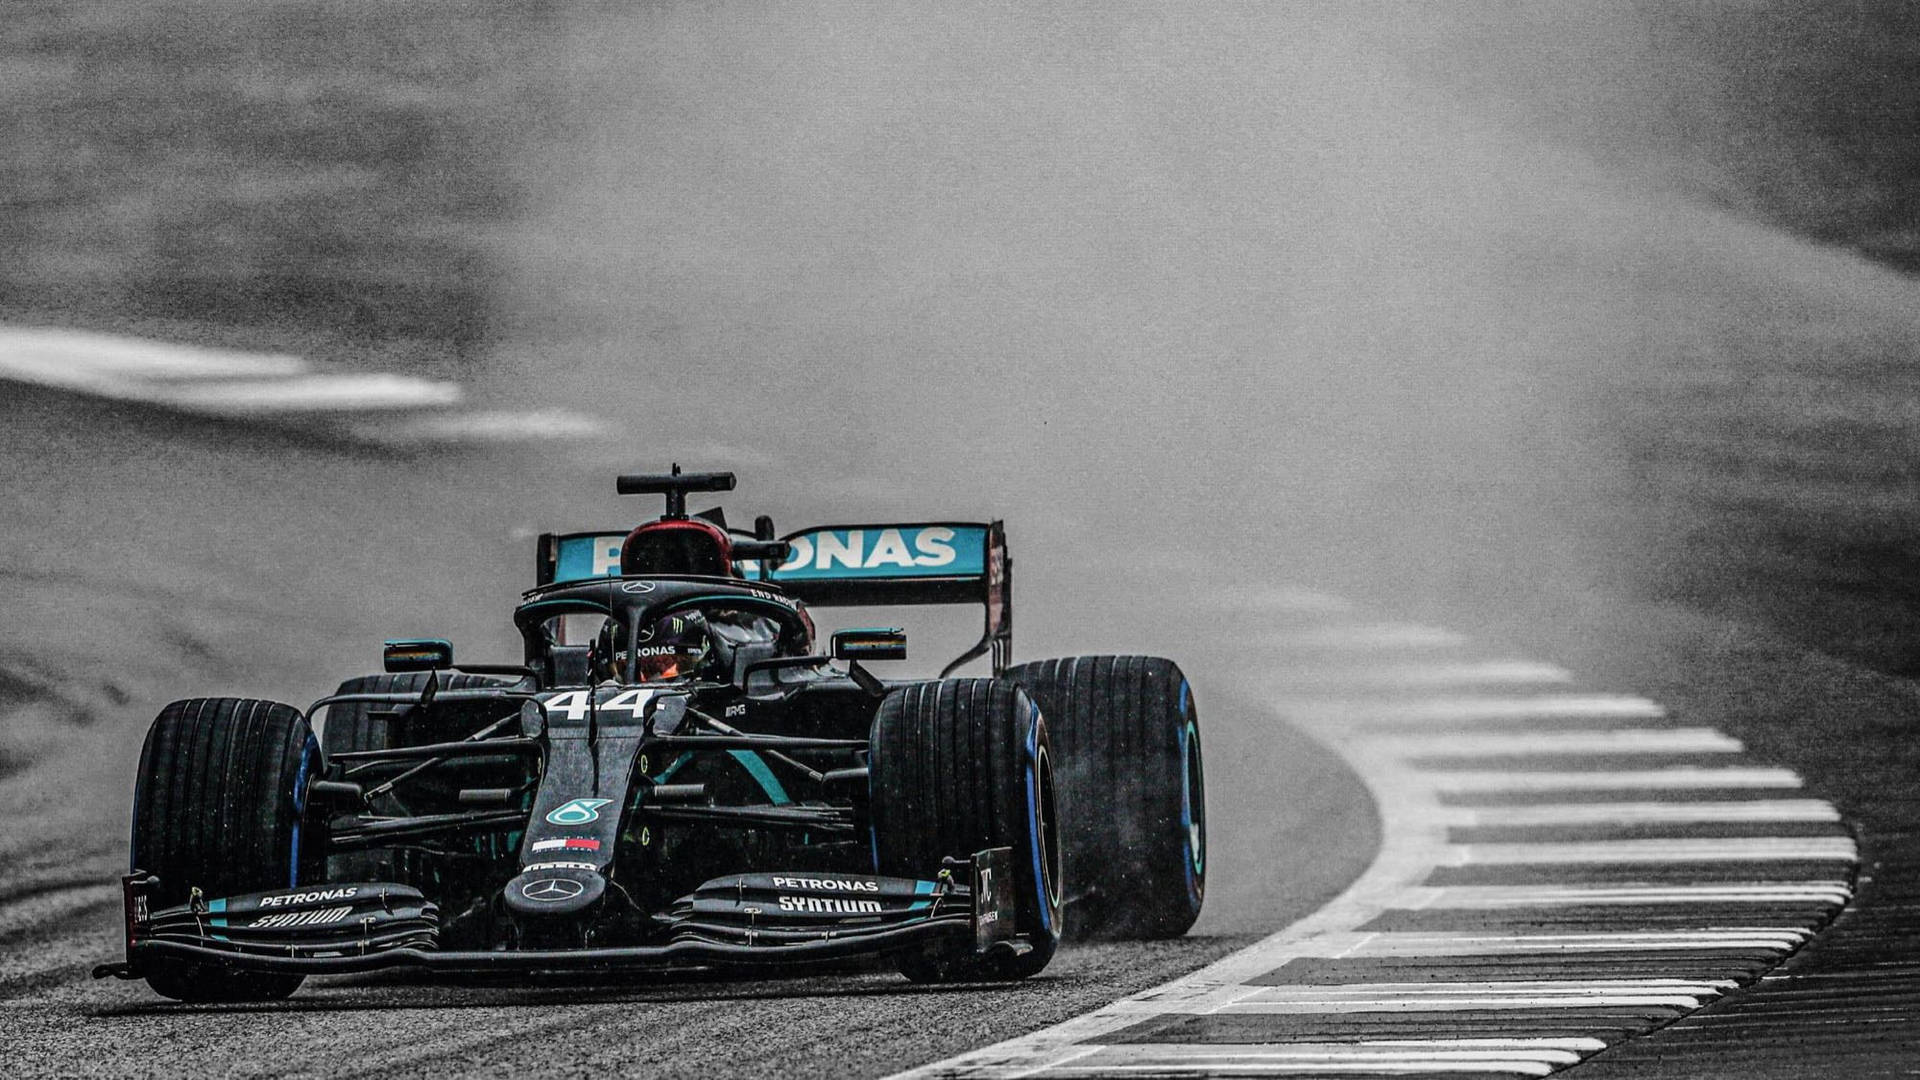 F1 Petronas Amg On Track